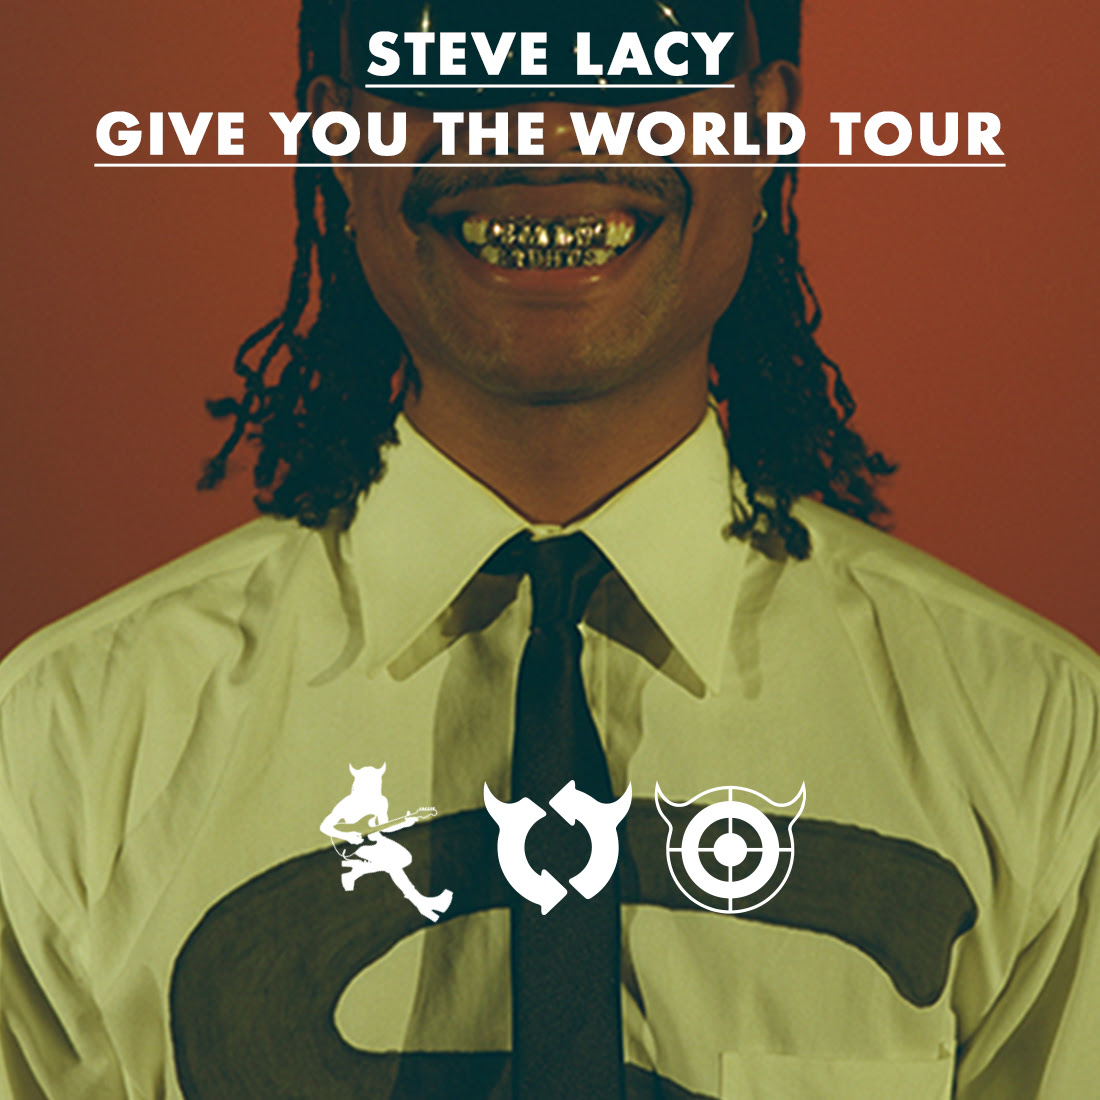 Steve Lacy tour